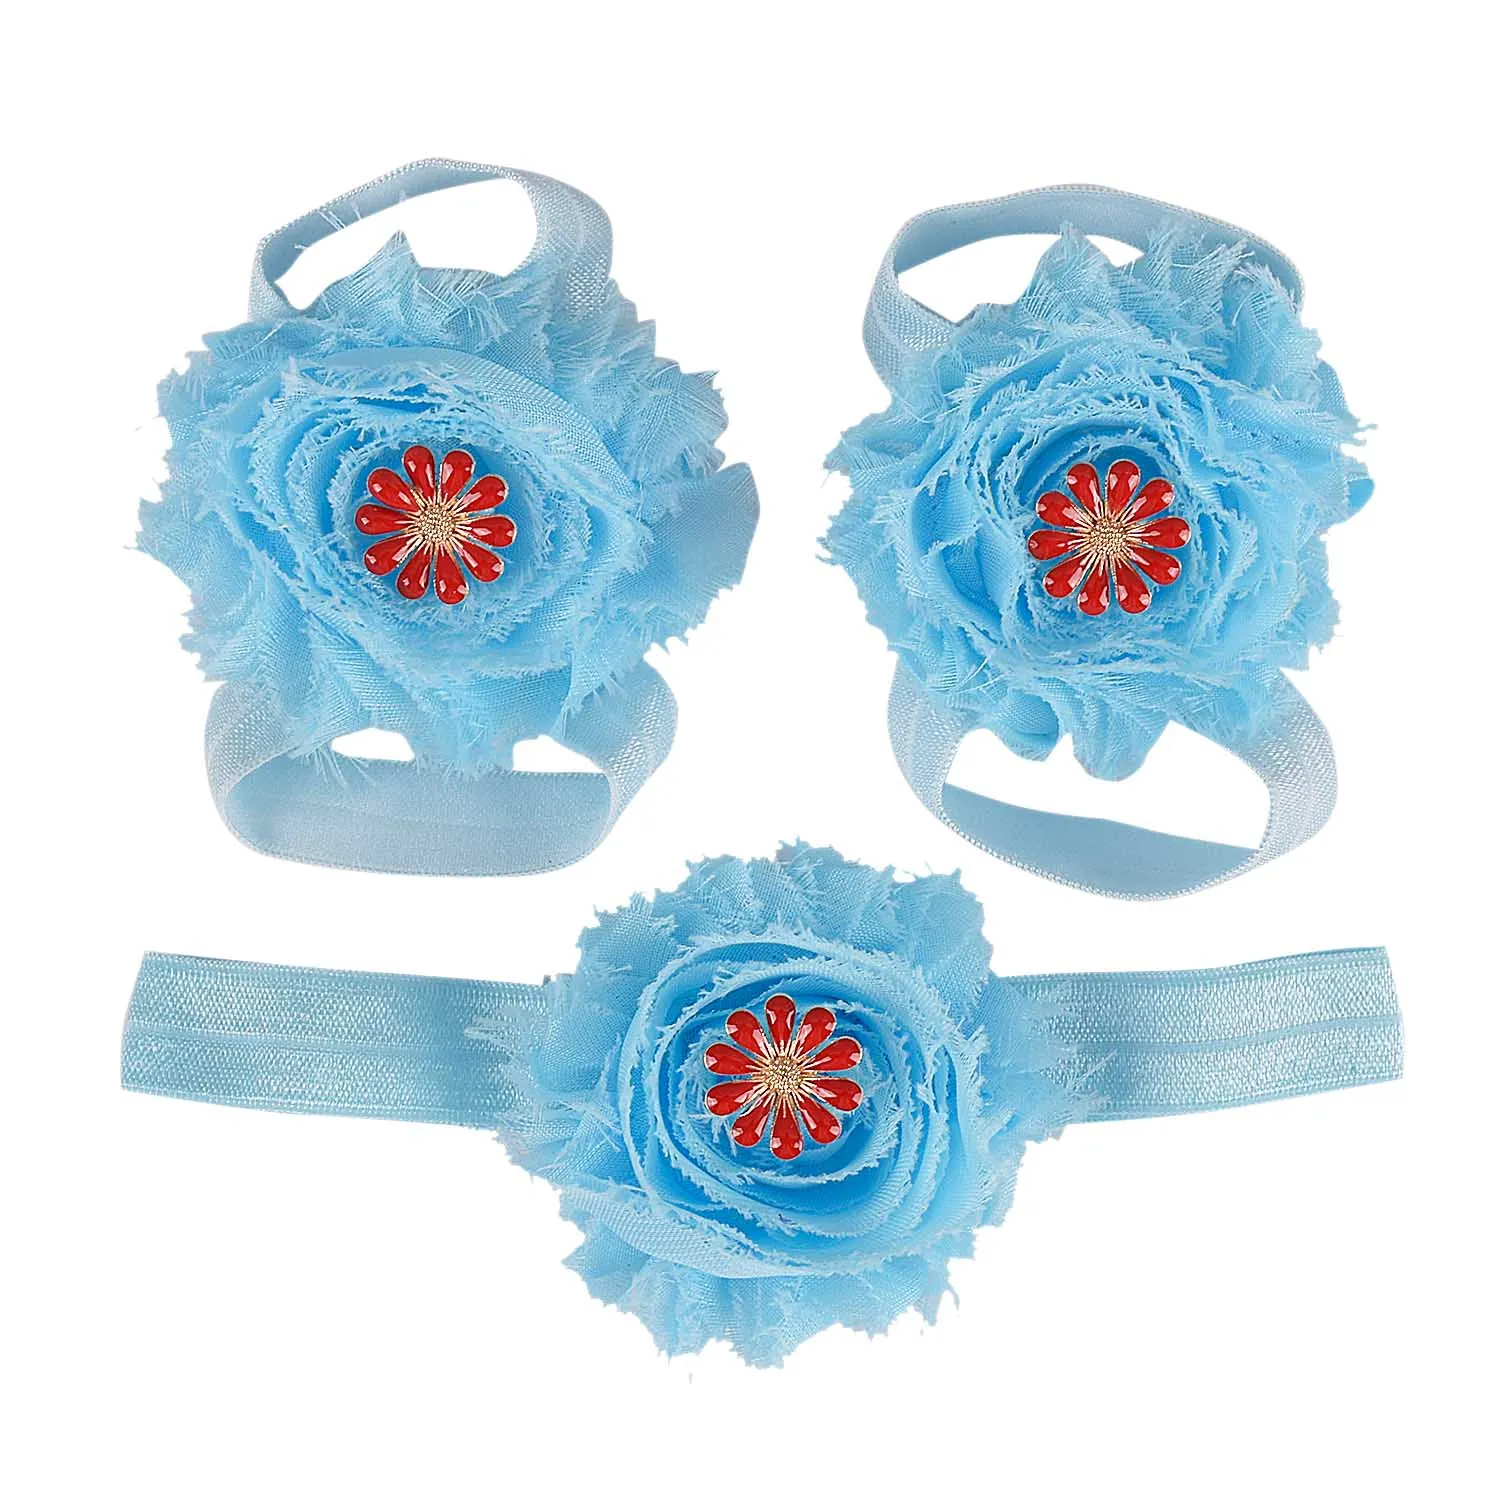 Босоножки ботинки в цветочек, пышный цветок-бантик сандалии для новорожденных обувь для крещения обувь для малышей реквизит для фотосессии 18 цветов - Цвет: Небесно-голубой